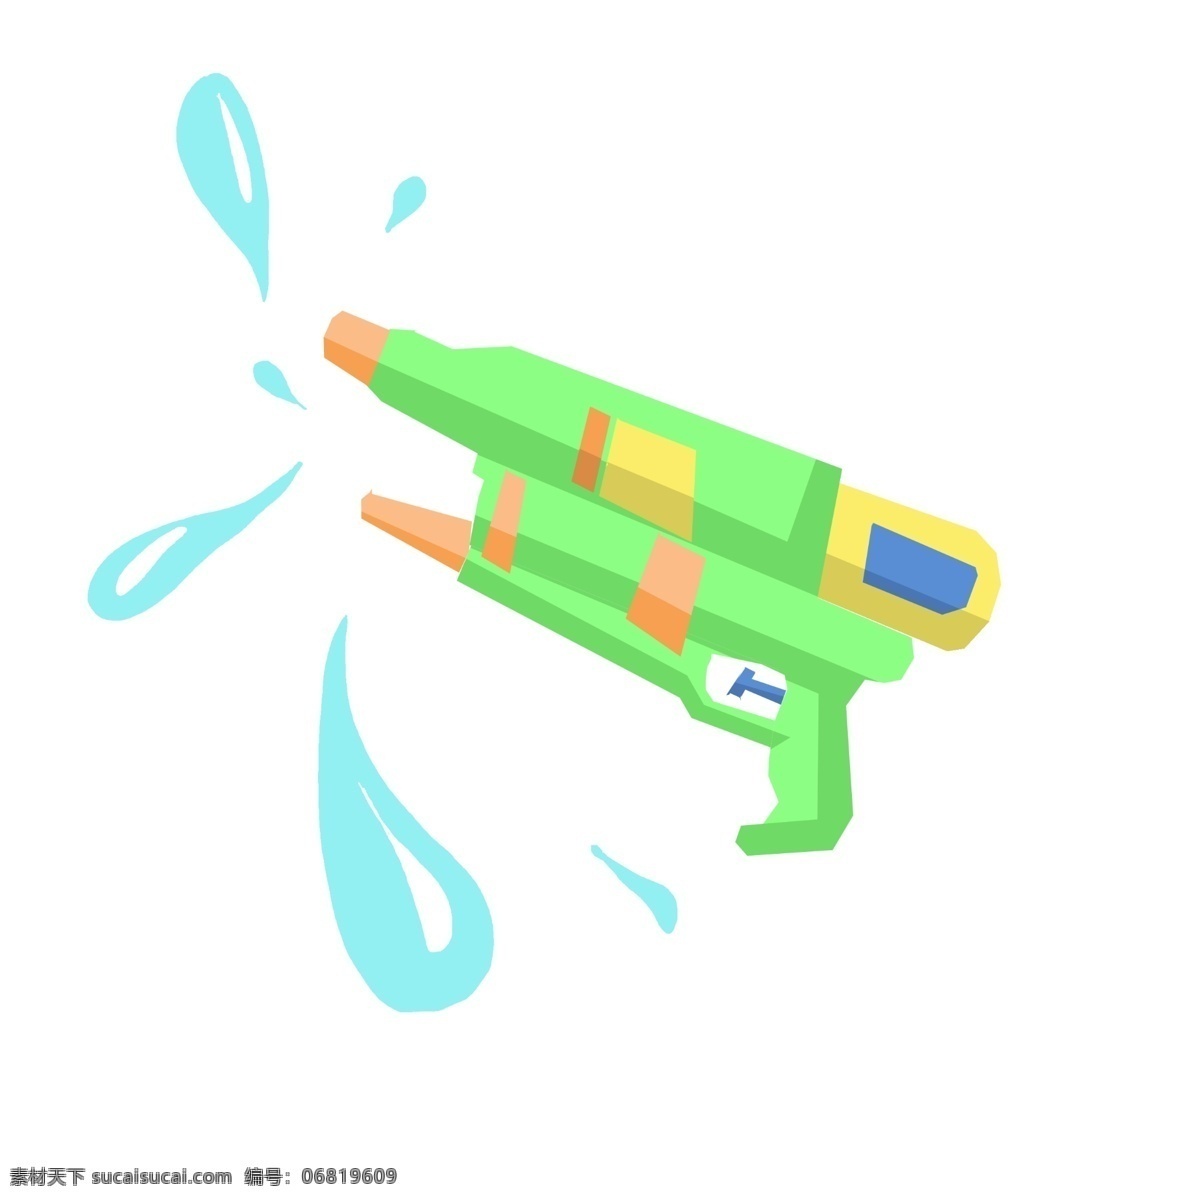 绿色 水枪 玩具 插画 绿色的水枪 卡通插画 水枪插画 玩具水枪 玩具插画 水枪模型 小型的水枪